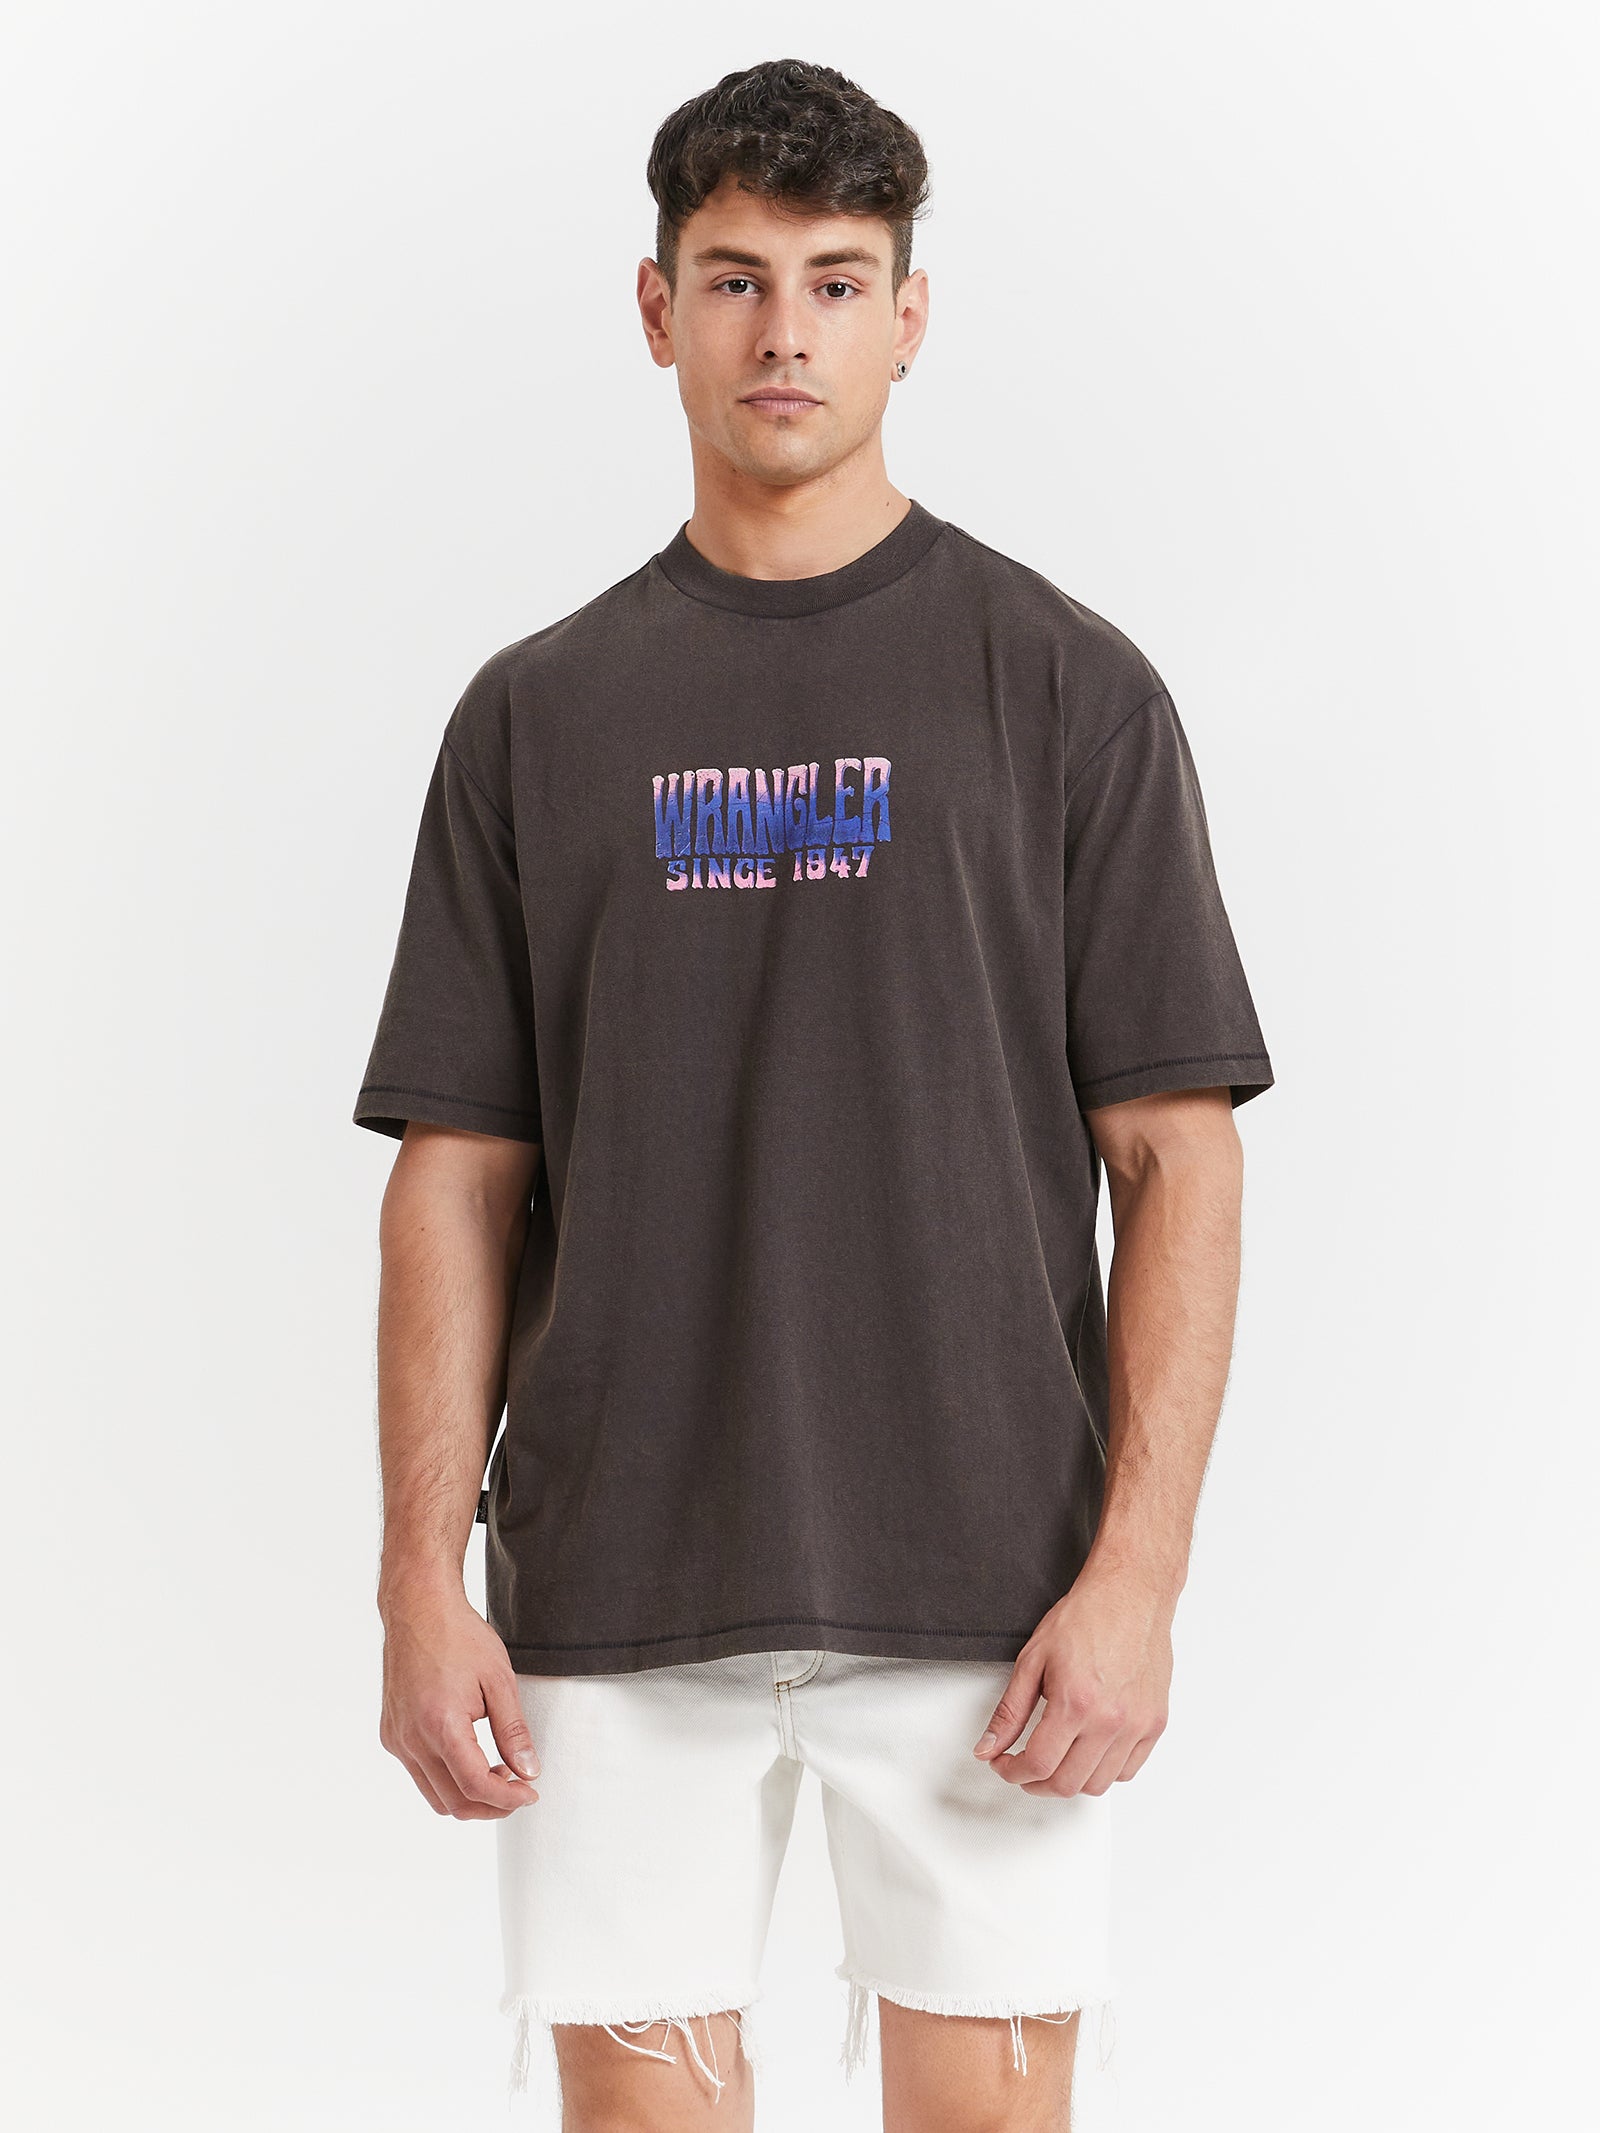 Mind Mirage Slacker T-Shirt in Black Glue Worn Store 